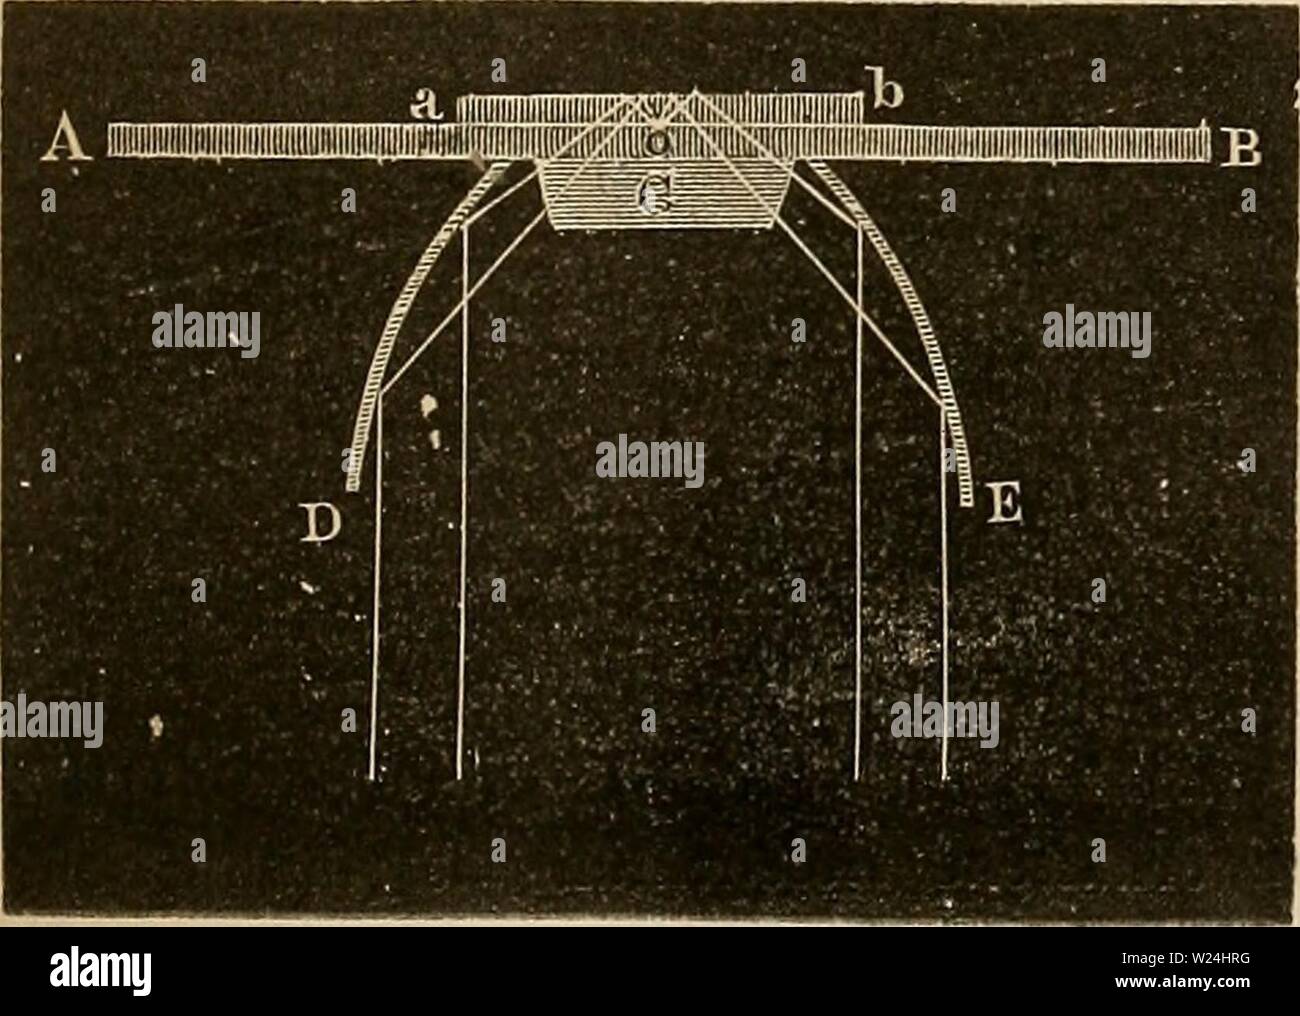 Archive image from page 244 of Das mikroskop Theorie, gebrauch, geschichte. Das mikroskop. Theorie, gebrauch, geschichte und gegenwärtiger zustand desselben  dasmikroskoptheo00hart Year: 1859  Fig. 110.    auch durch Benutzung eines gläsernen Paraboloids. — In Fig. 110 ist AB wiederum das Objectglas und ab das Deck- plättchen; DE ist der Durch- schnitt des parabolischen Re- flectors, und C ist eine halb- kugelige Linse, an der ein Segment abgeschliffen ist, so dass der übriggebliebene Theil etwa einem Drittel vom Durch- messer der Kugel entspricht. Stock Photo